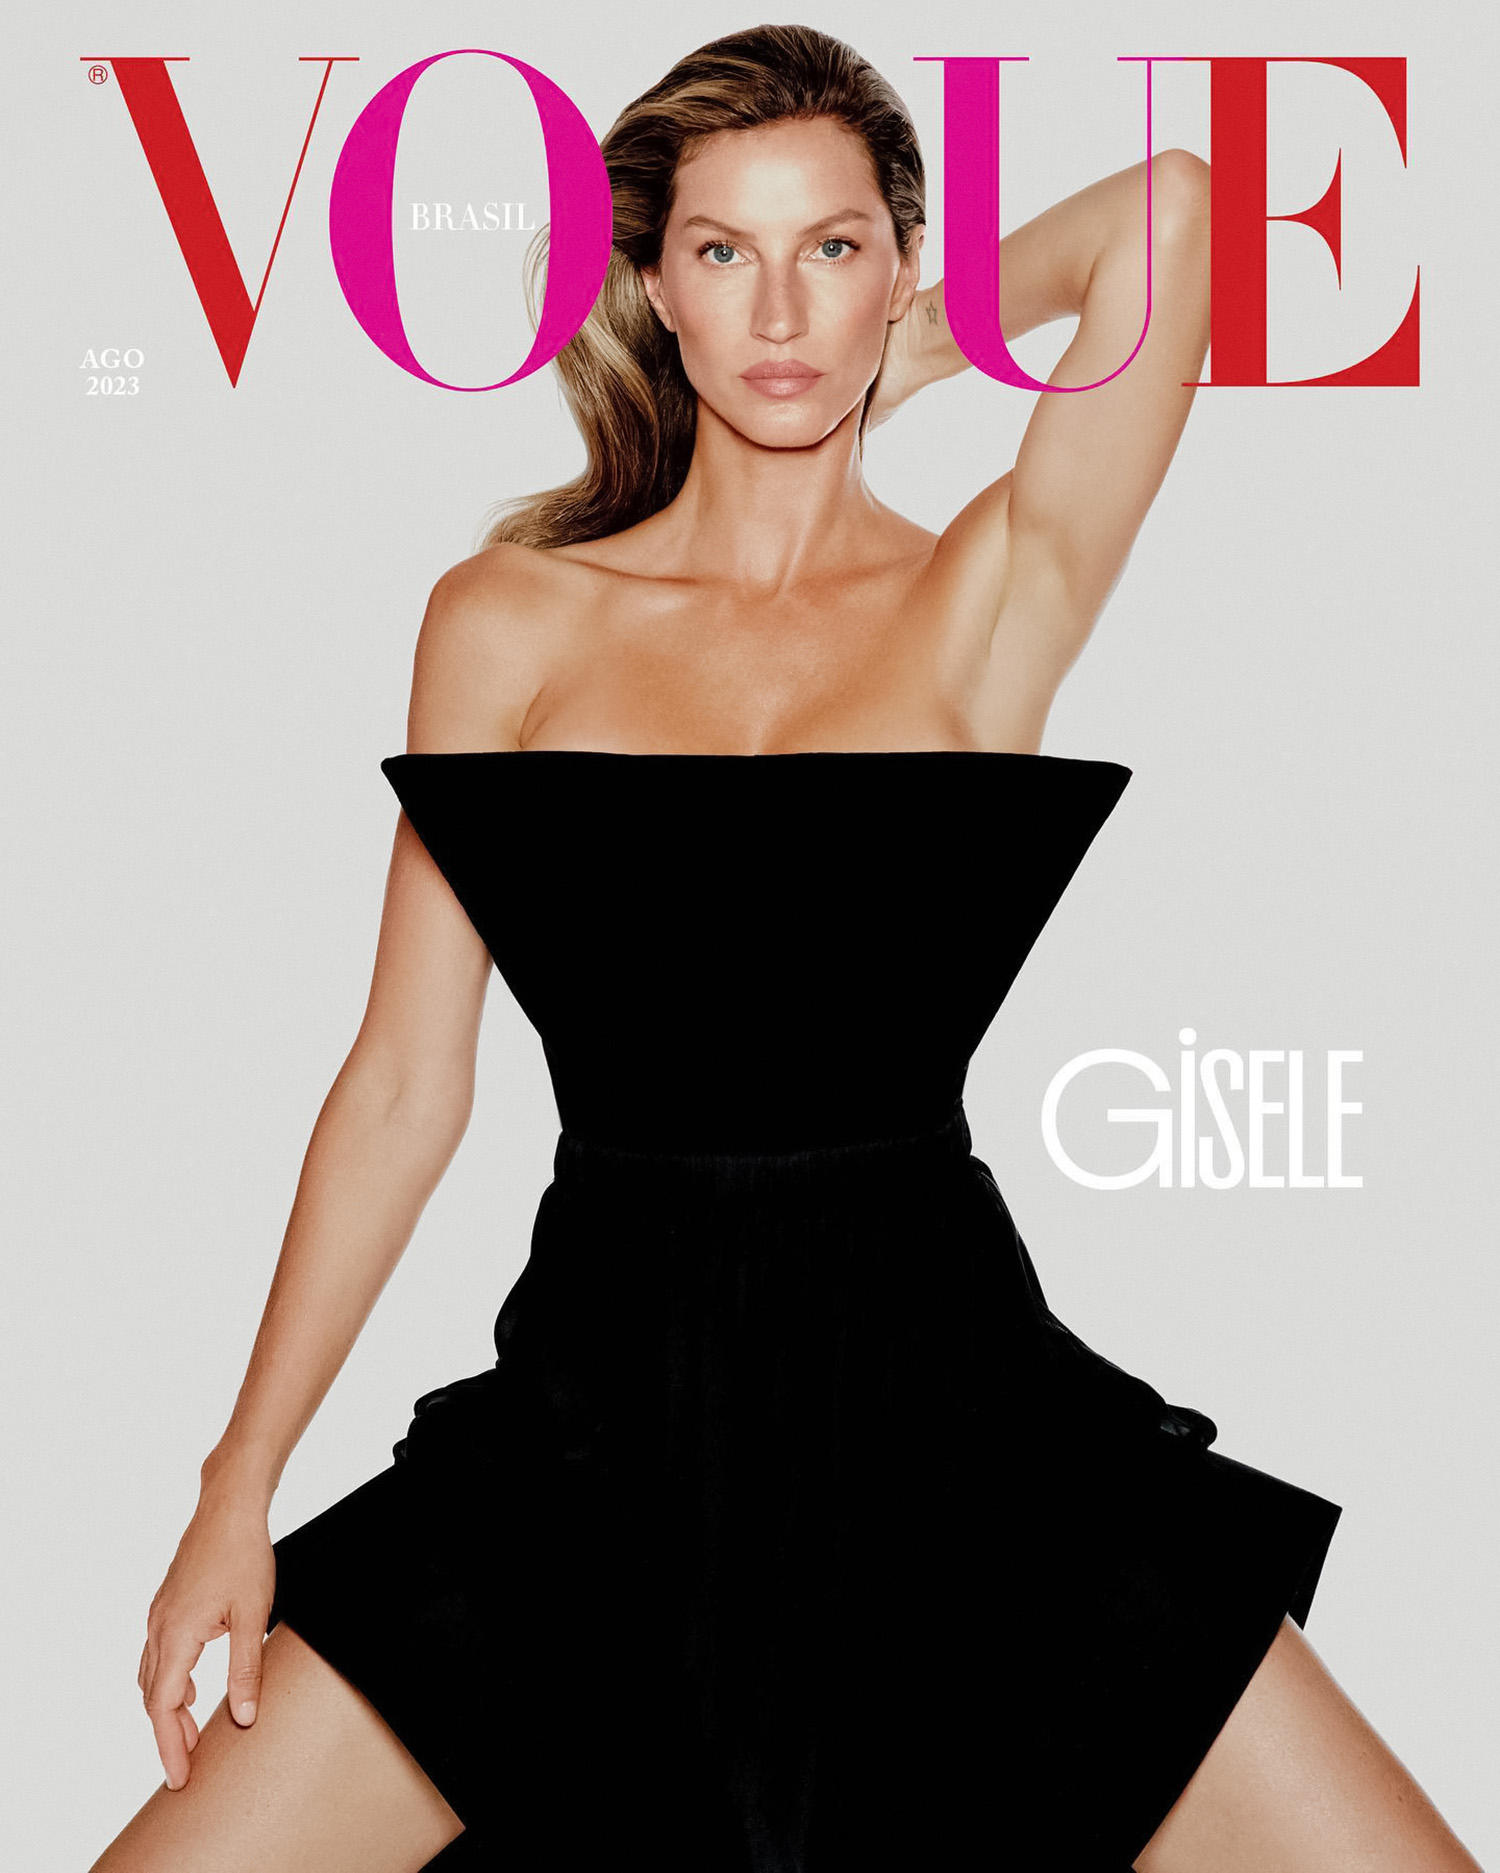 Gisele Bündchen covers Vogue Brazil August 2023 by Lufré